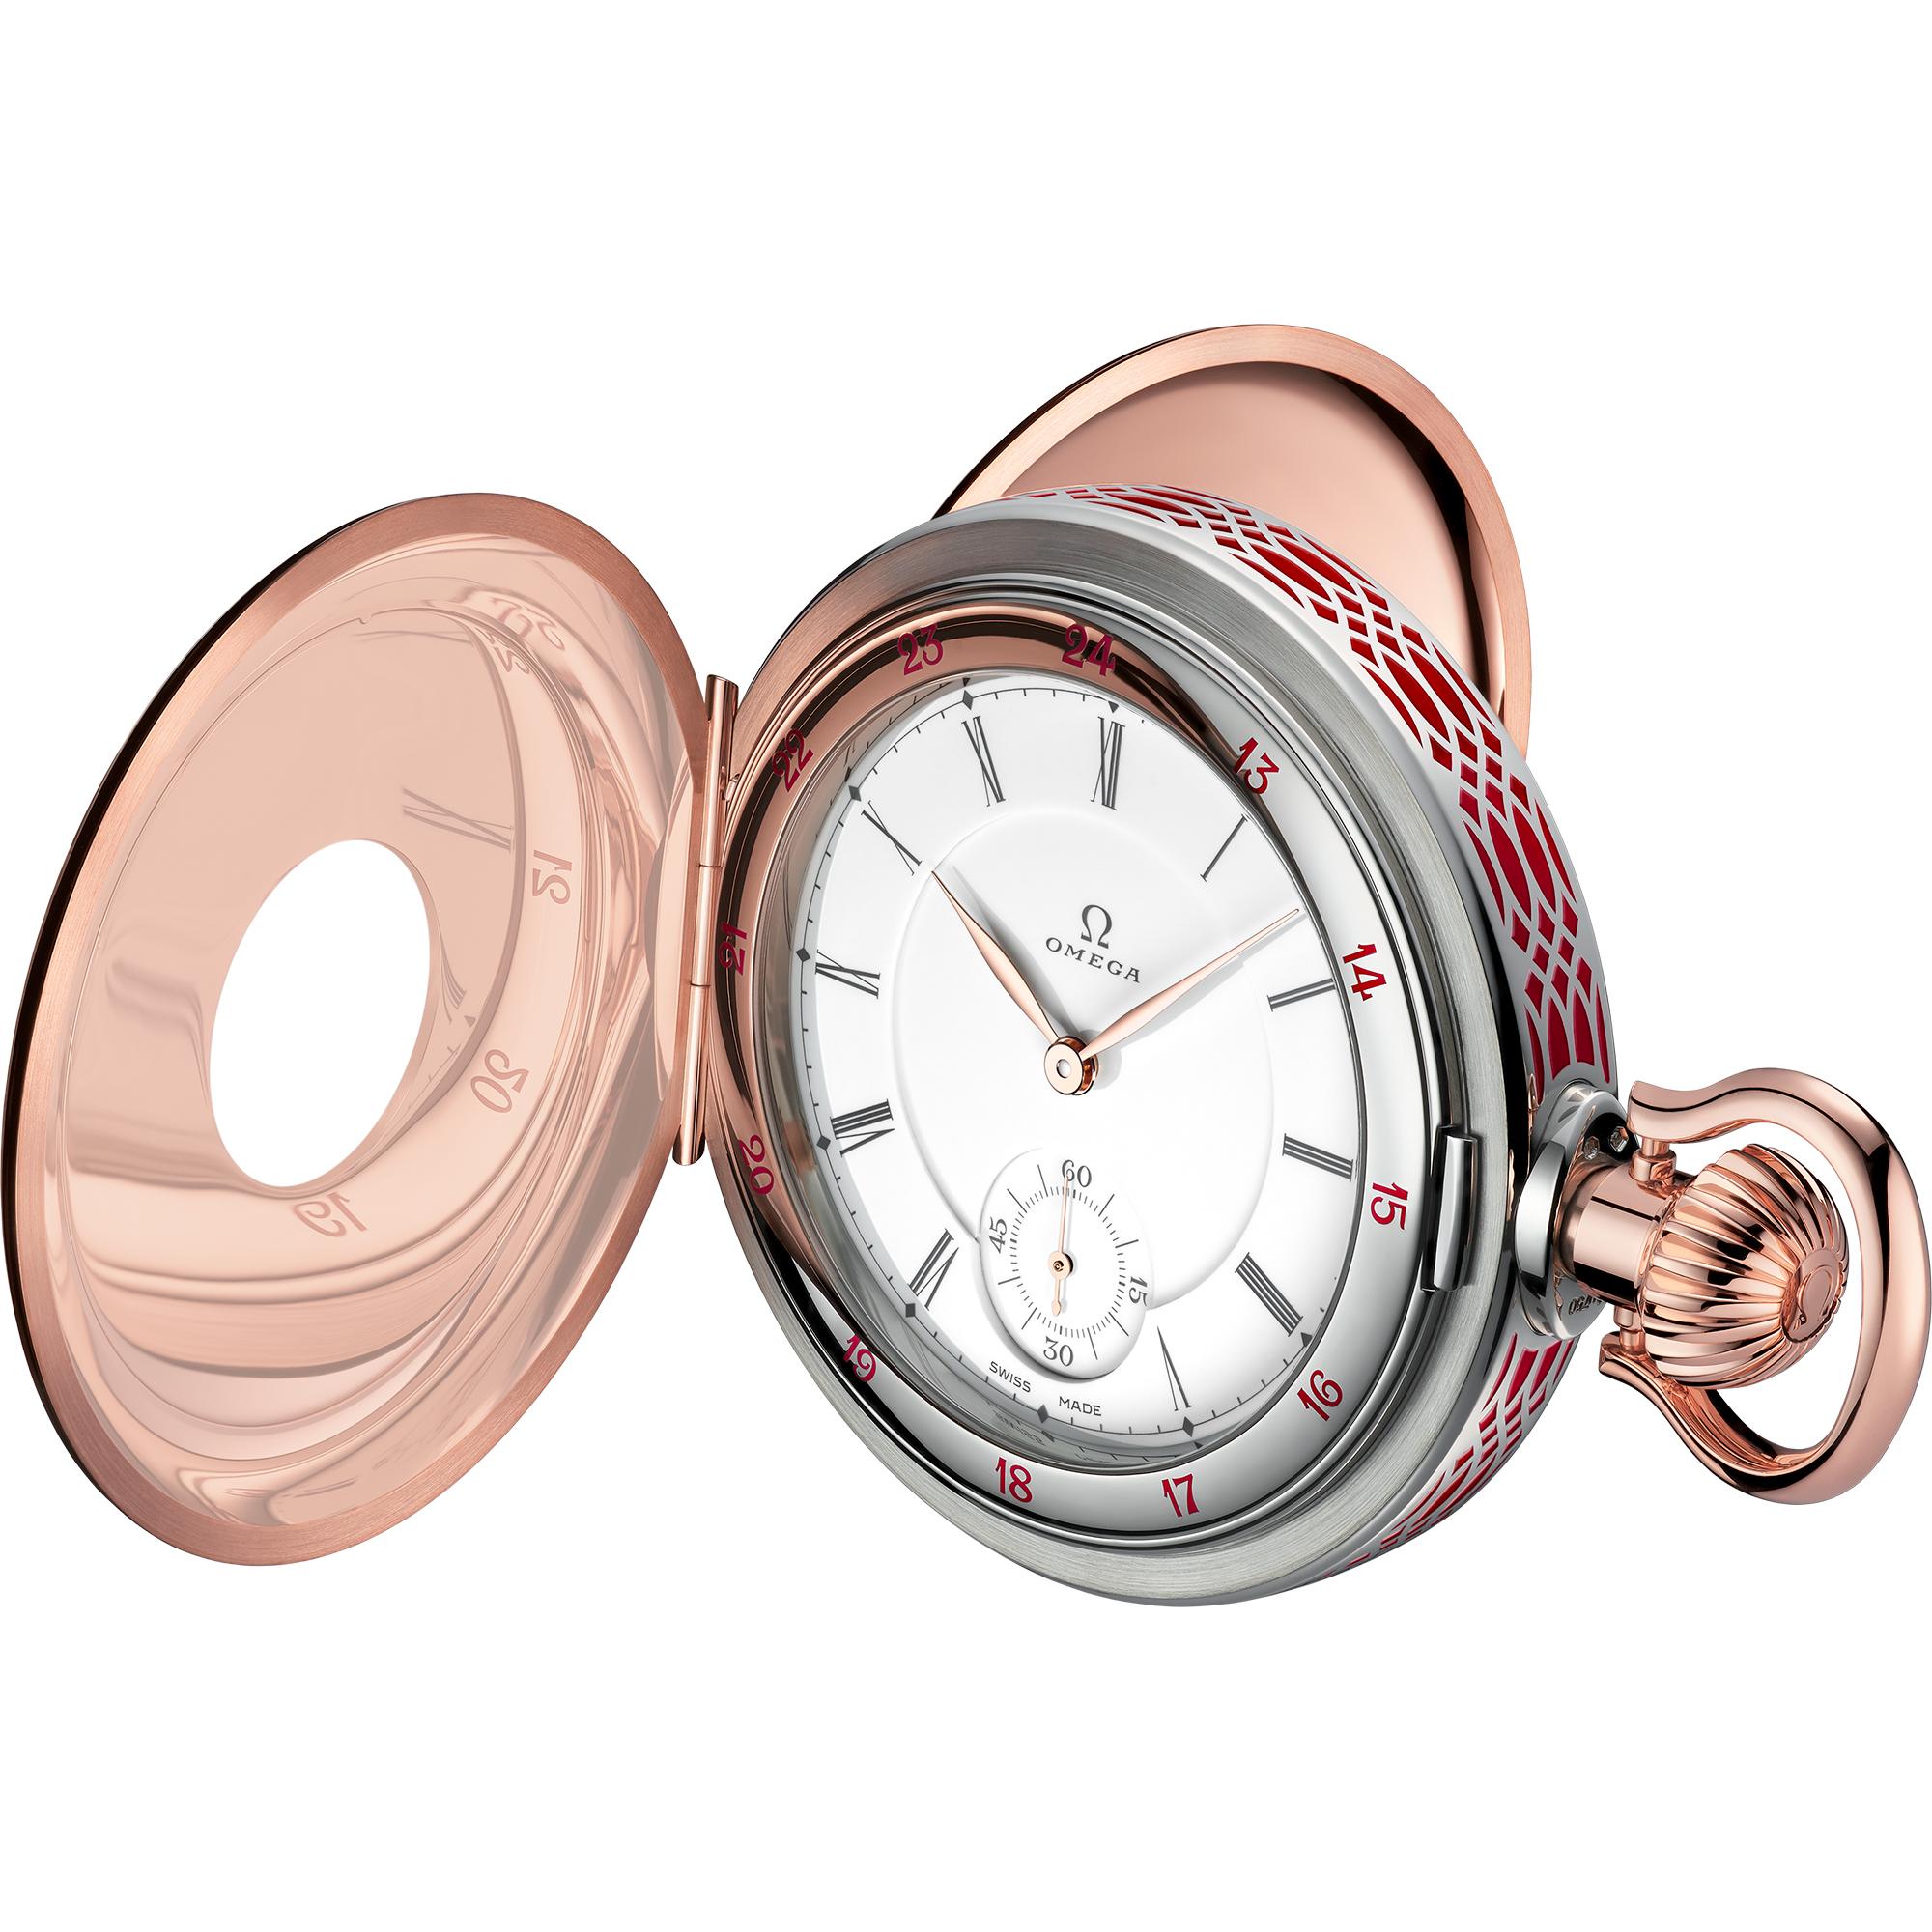 Специальные серии Карманные часы OMEGA 125th Anniversary 60 мм, золото Sedna™ - золото Canopus Gold™ - 518.62.60.00.04.001